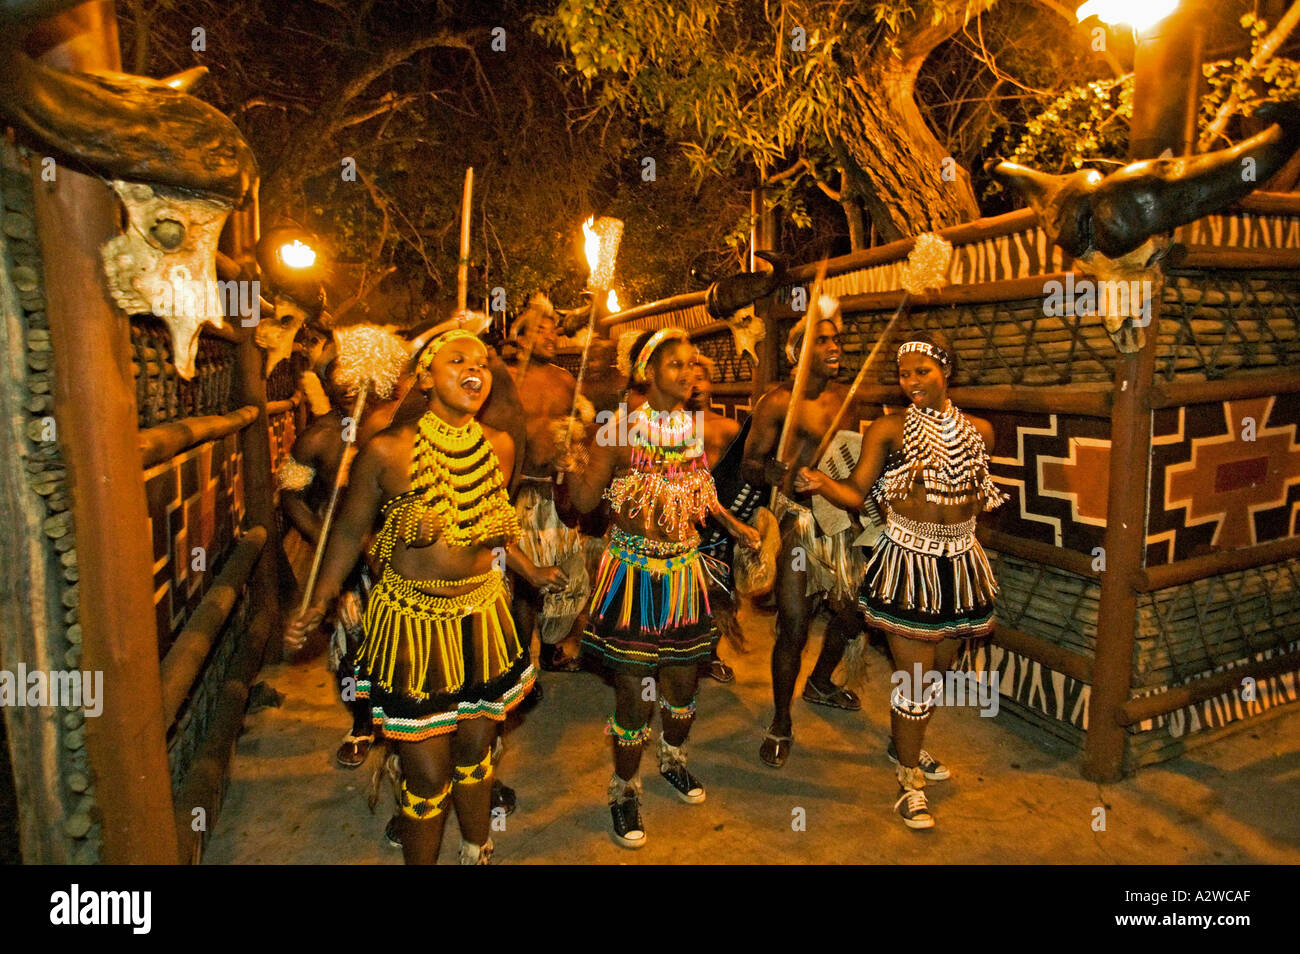 Zulu Frau tanzt im Kostüm von Zulu Maid Outfit gemacht von Perlen Kostüm getragen während tanzen Zeremonien Südafrika Stockfoto